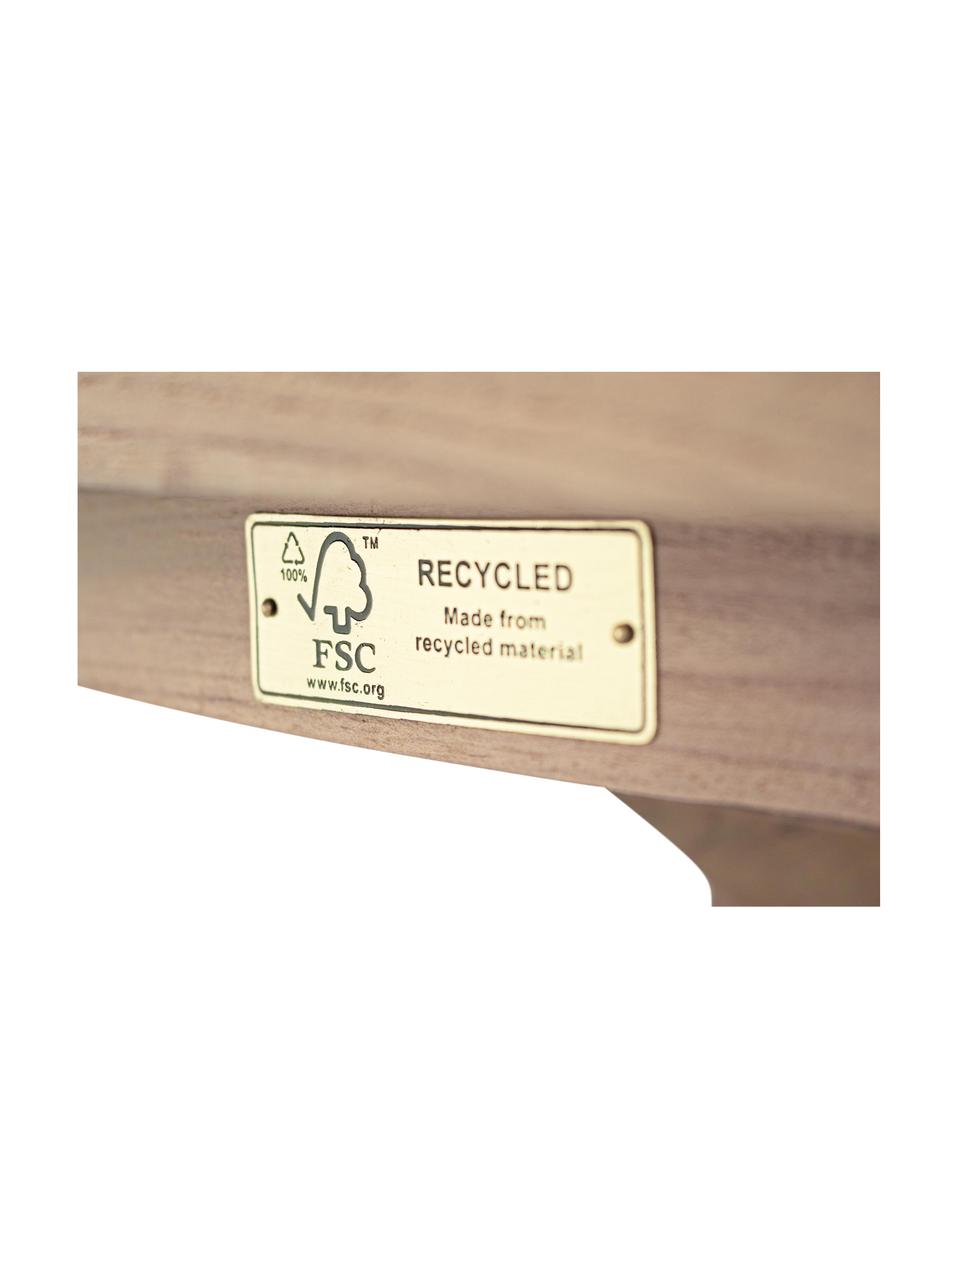 Tavolo da pranzo in legno massiccio Rift, Ø135 cm, Legno di teak, riciclato e certificato FSC, Teak riciclato, Ø 135 x Alt. 76 cm